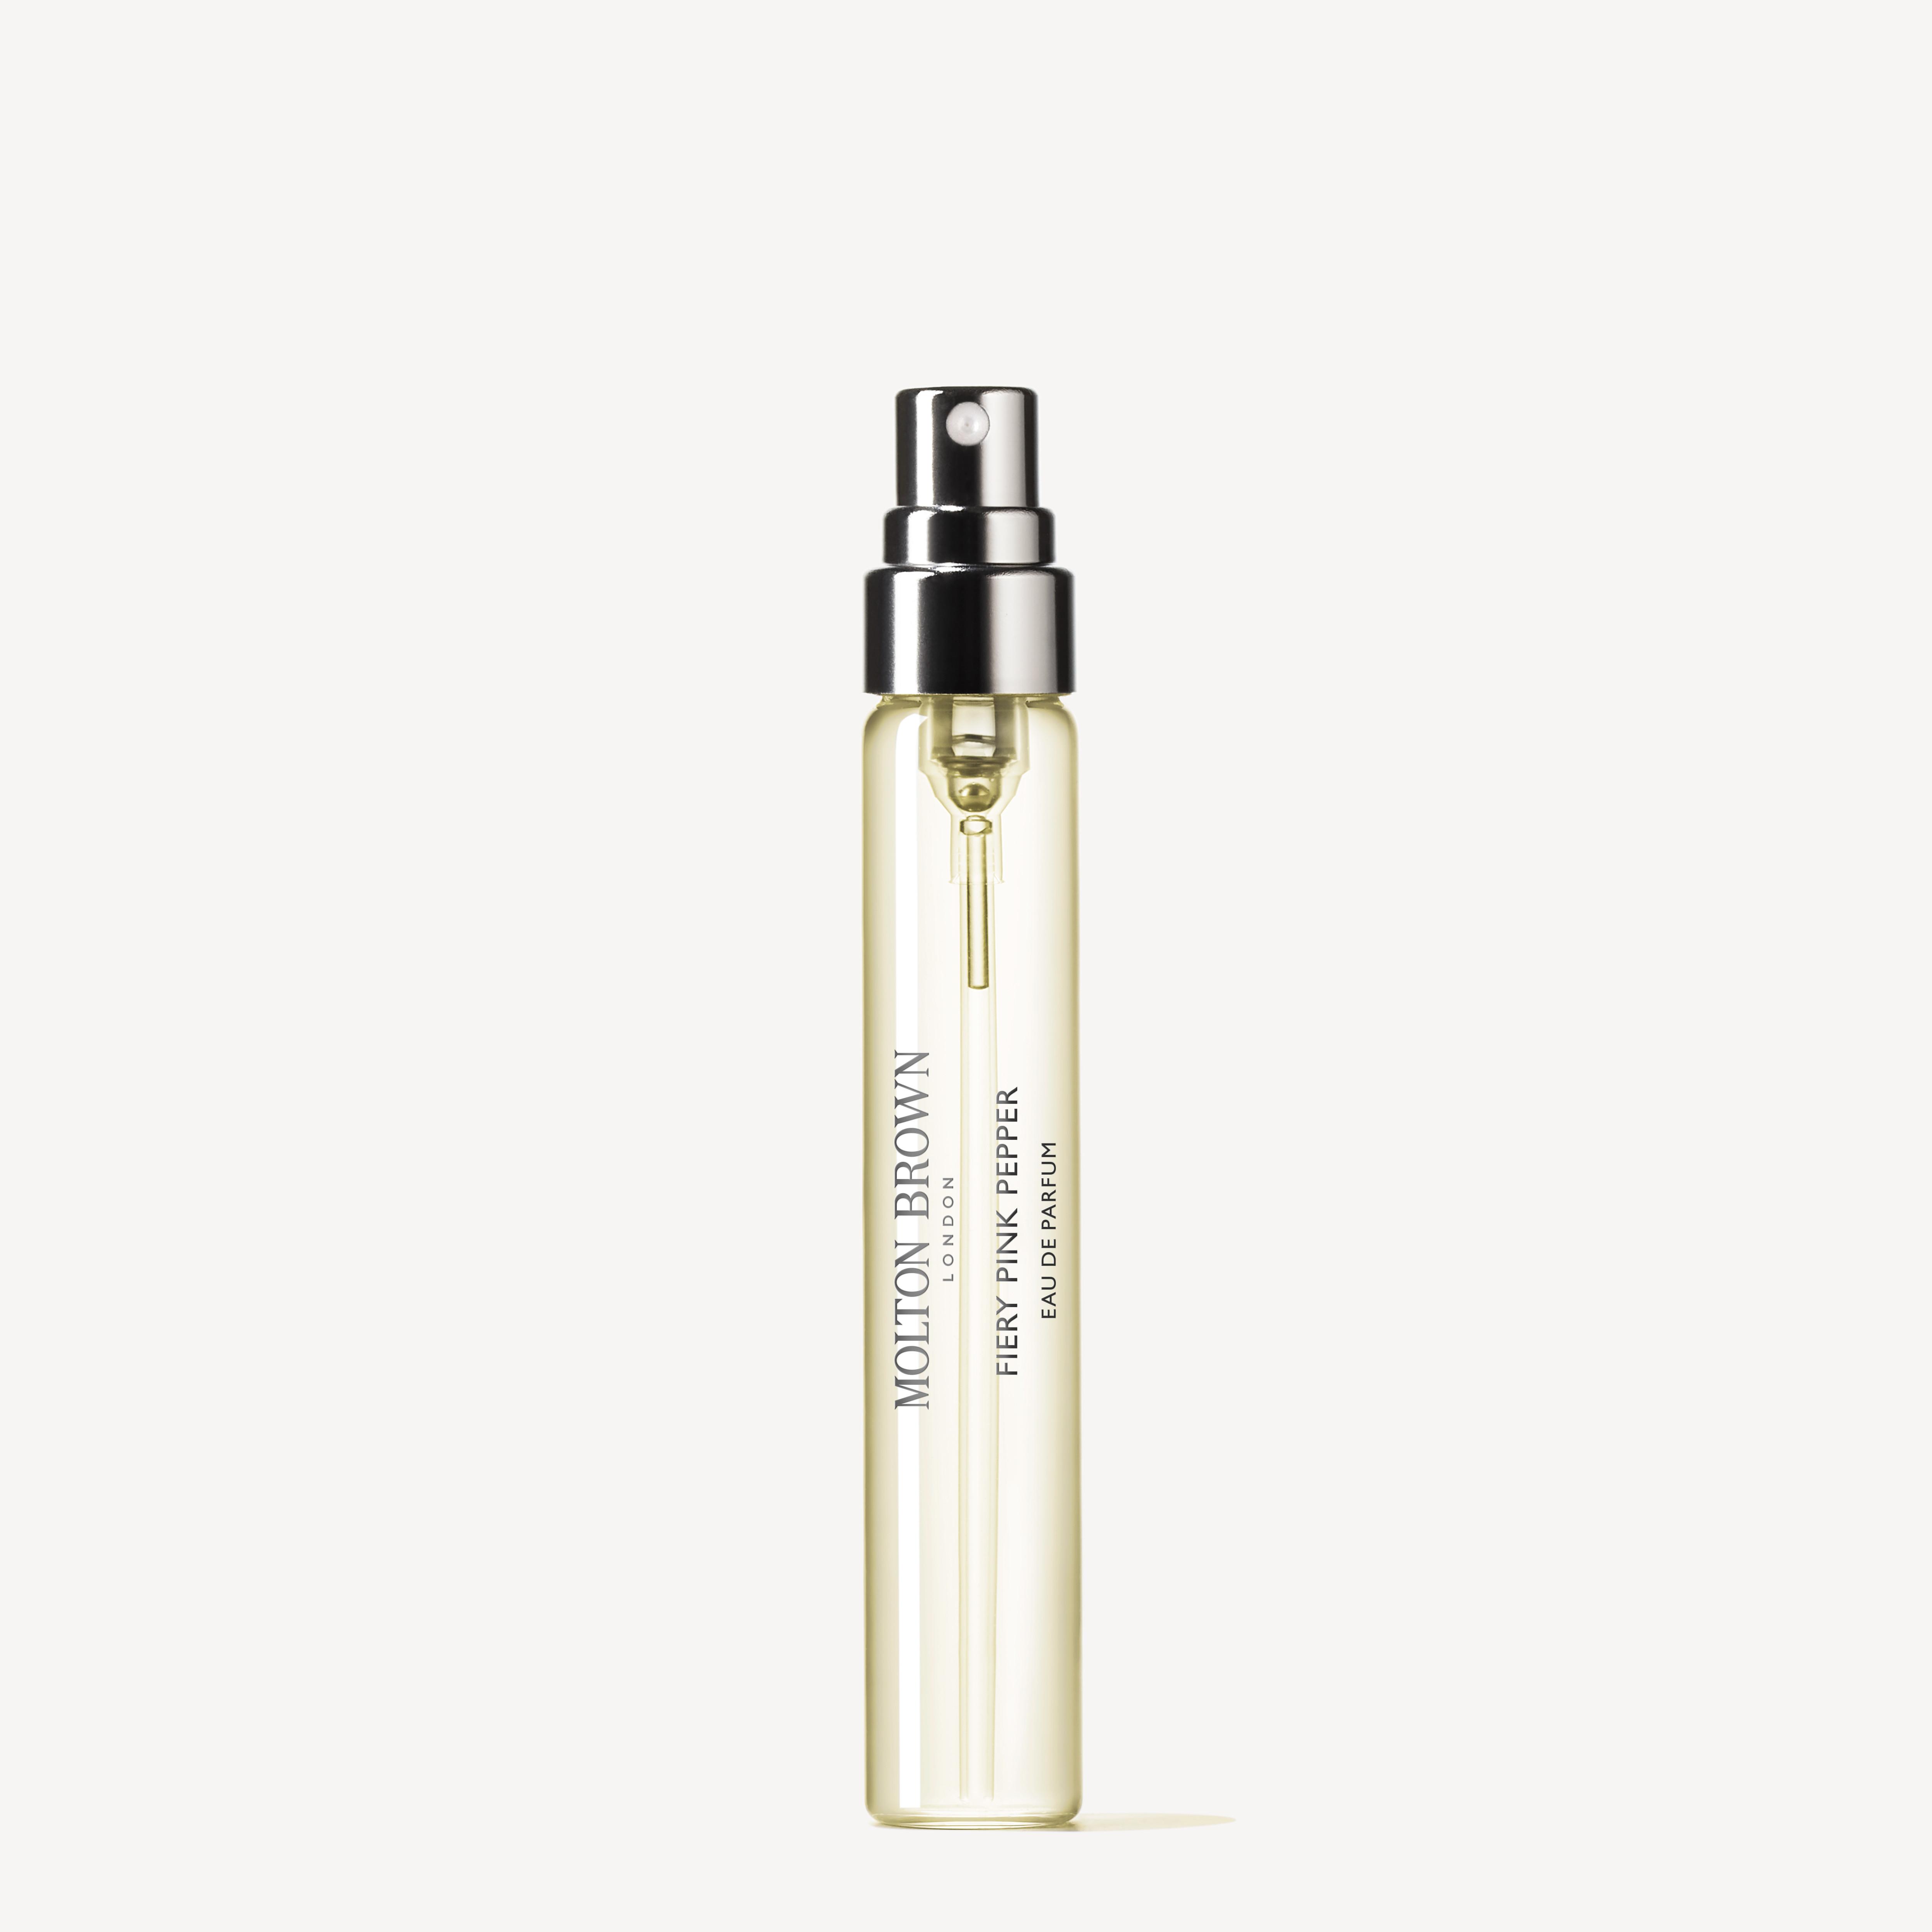 BYREDO - Travel Perfume Case I<3 edition